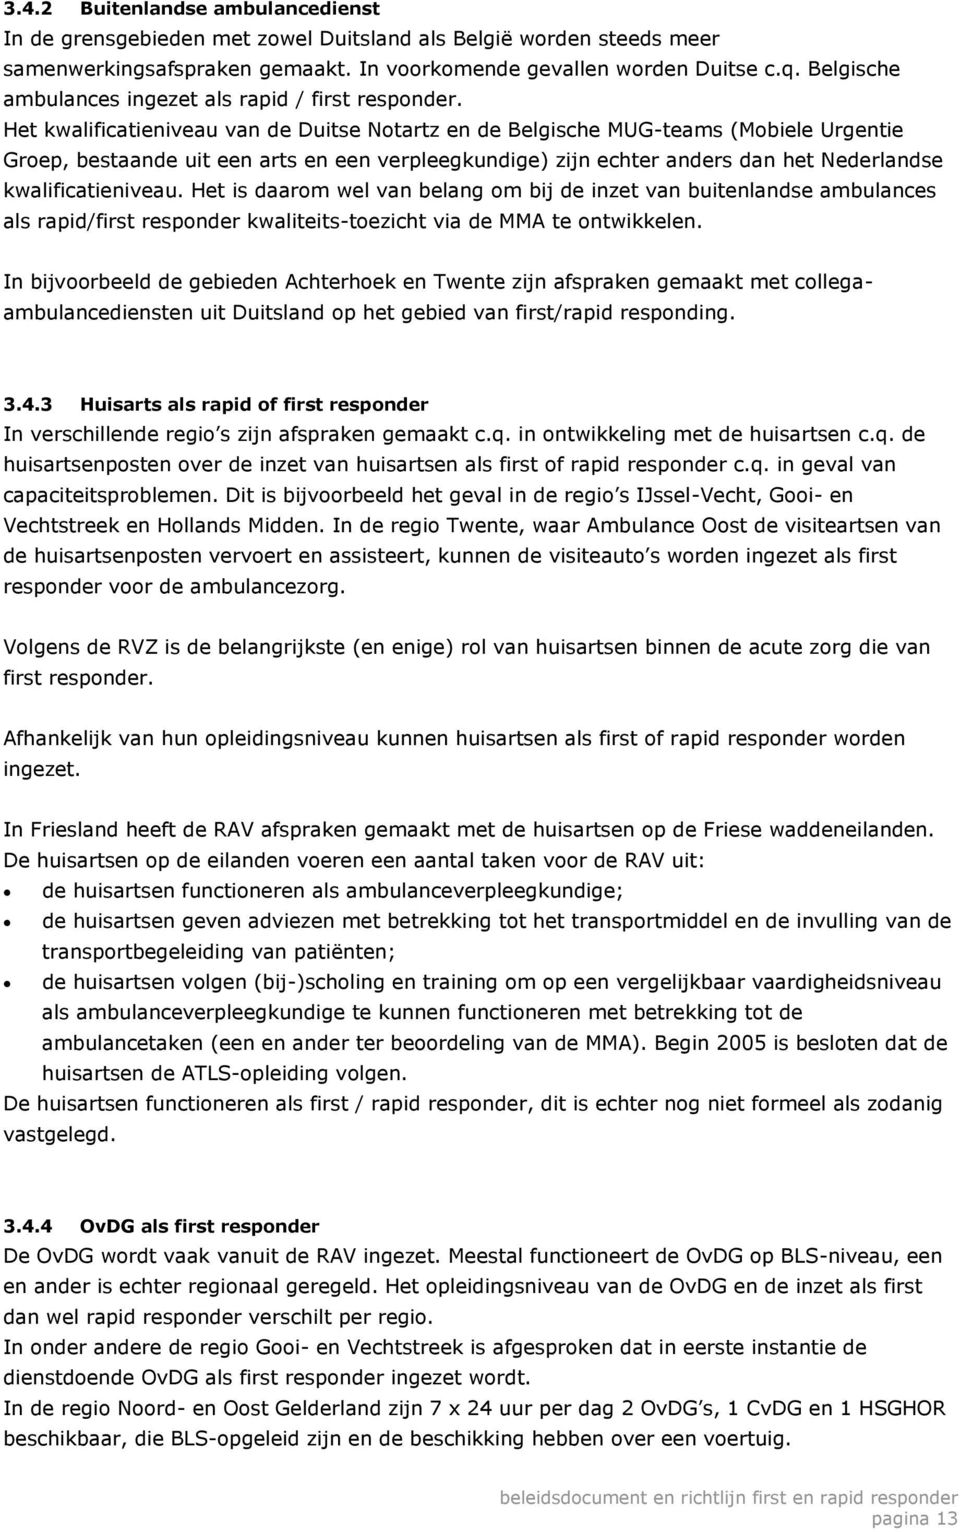 Het kwalificatieniveau van de Duitse Notartz en de Belgische MUG-teams (Mobiele Urgentie Groep, bestaande uit een arts en een verpleegkundige) zijn echter anders dan het Nederlandse